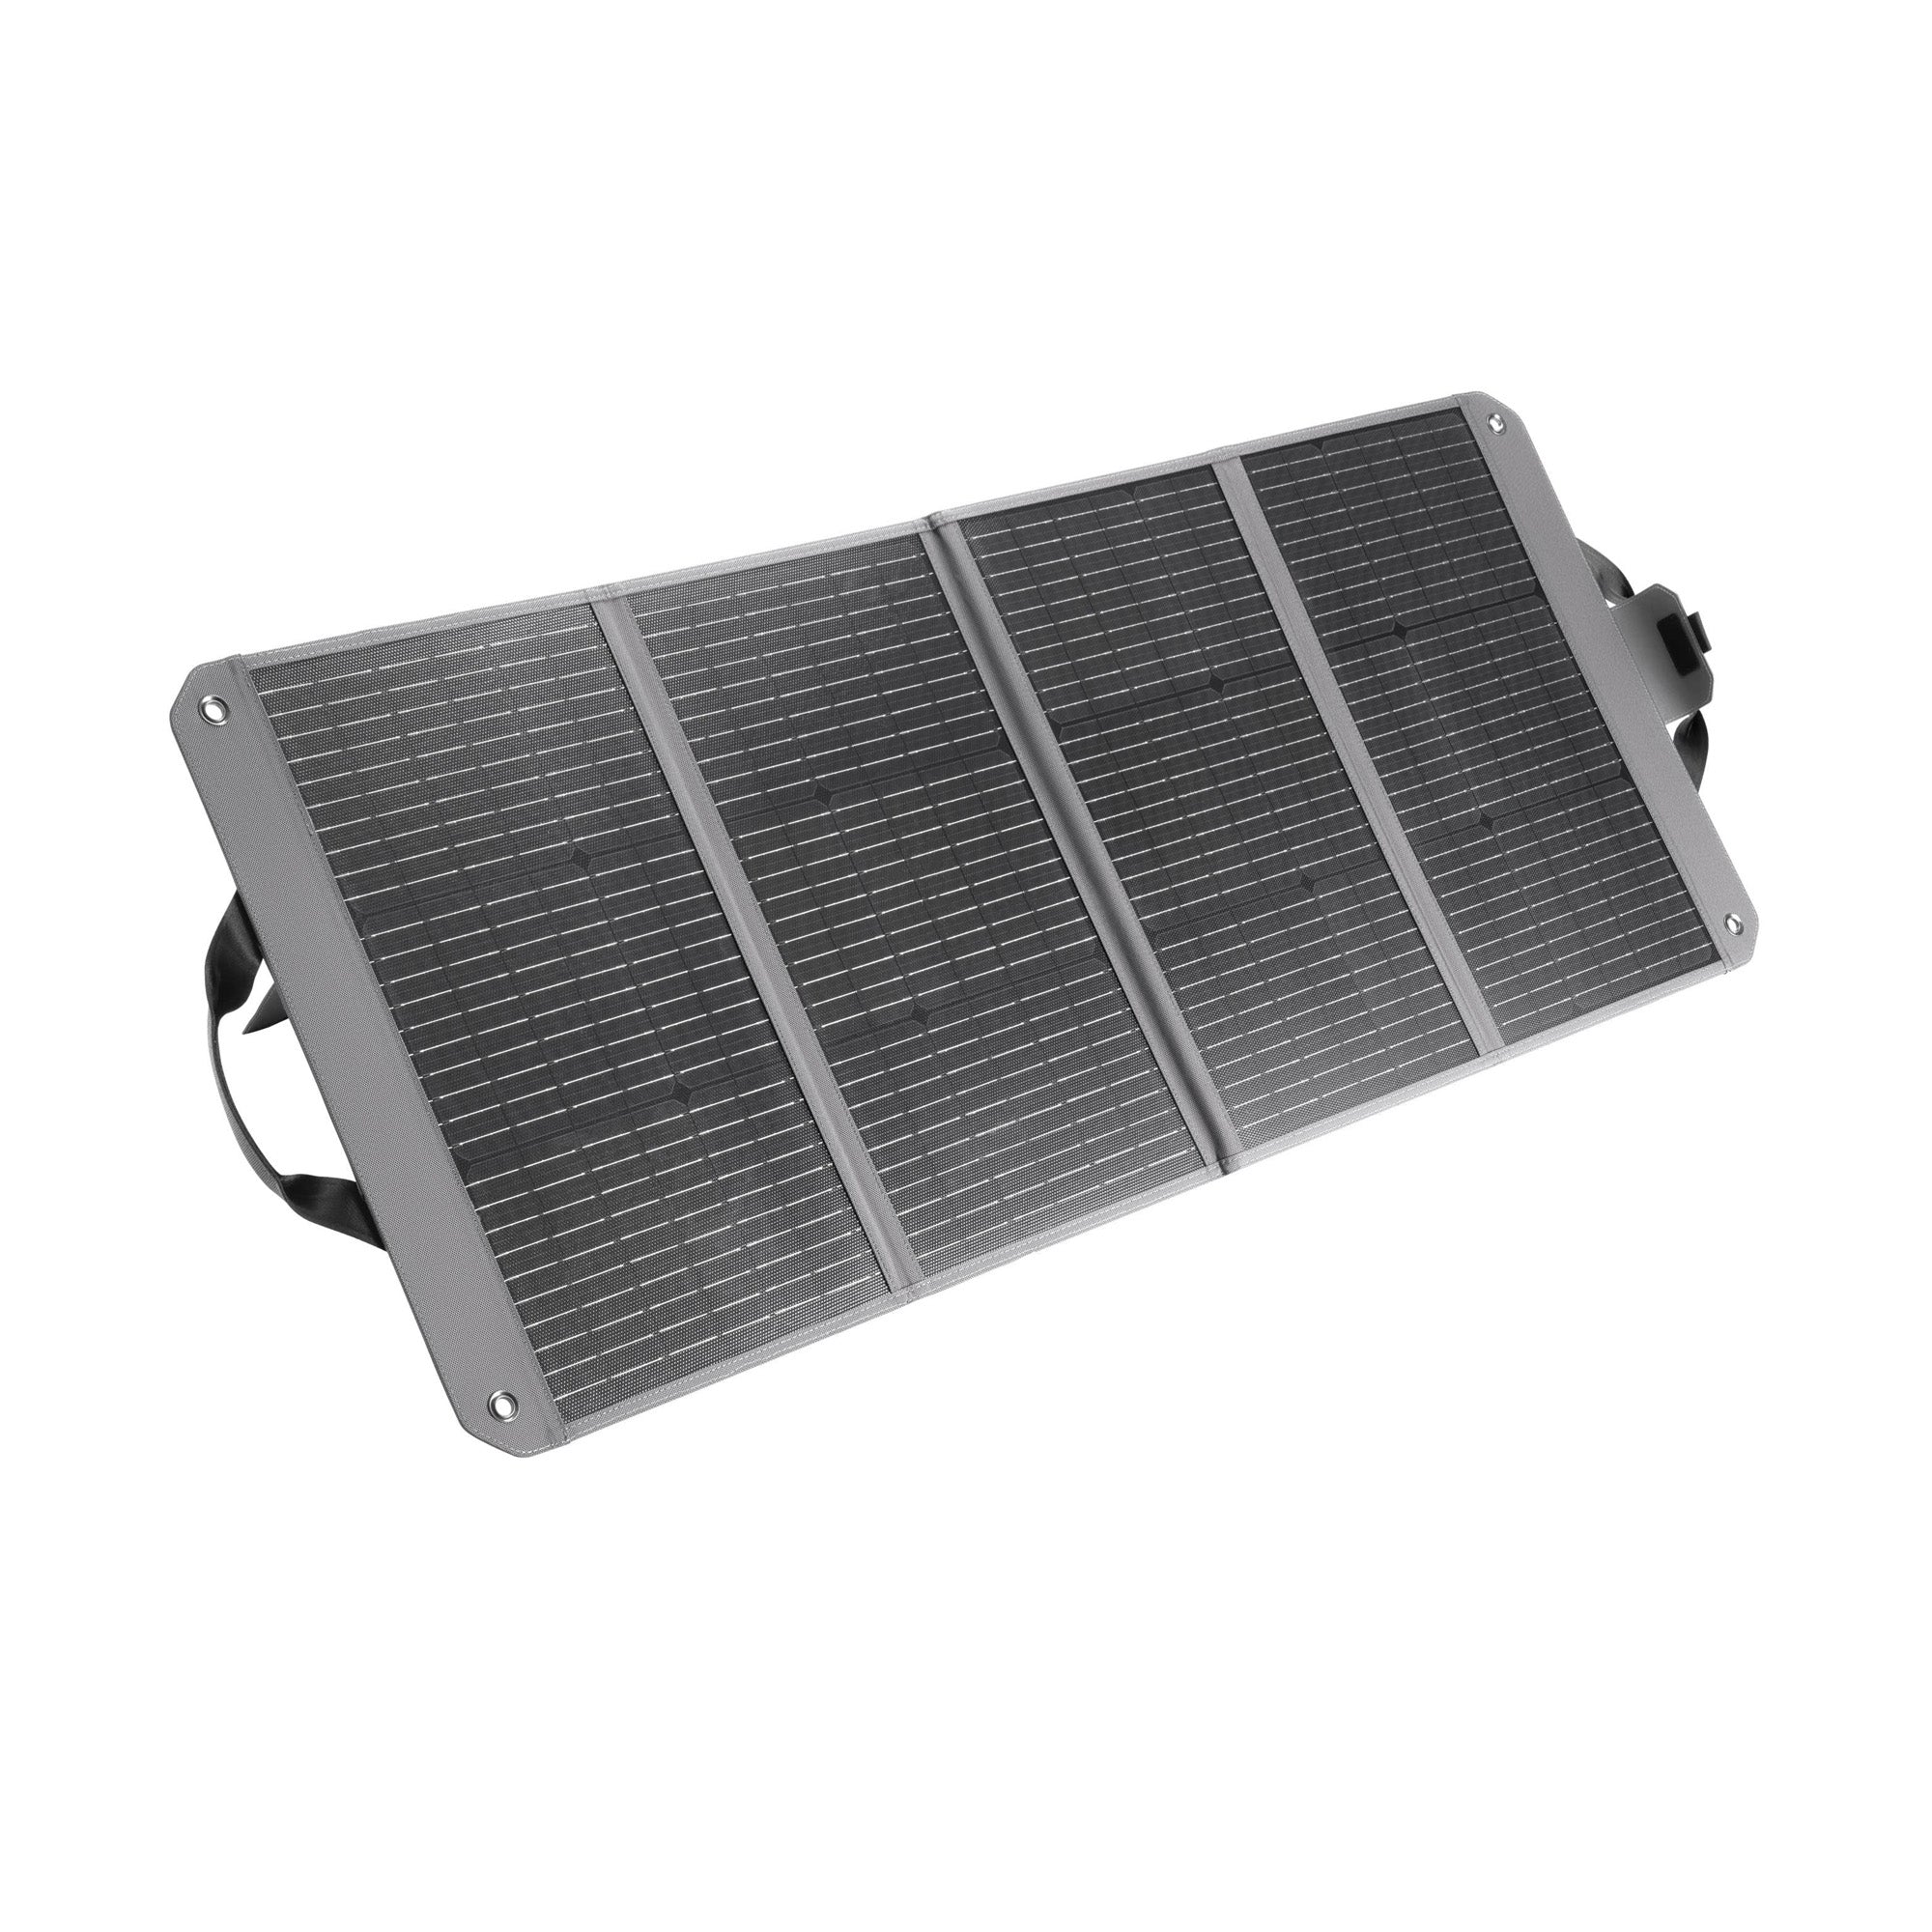 DJI Zignes 120W Solar Panel for DJI Power 1000 / Power 500